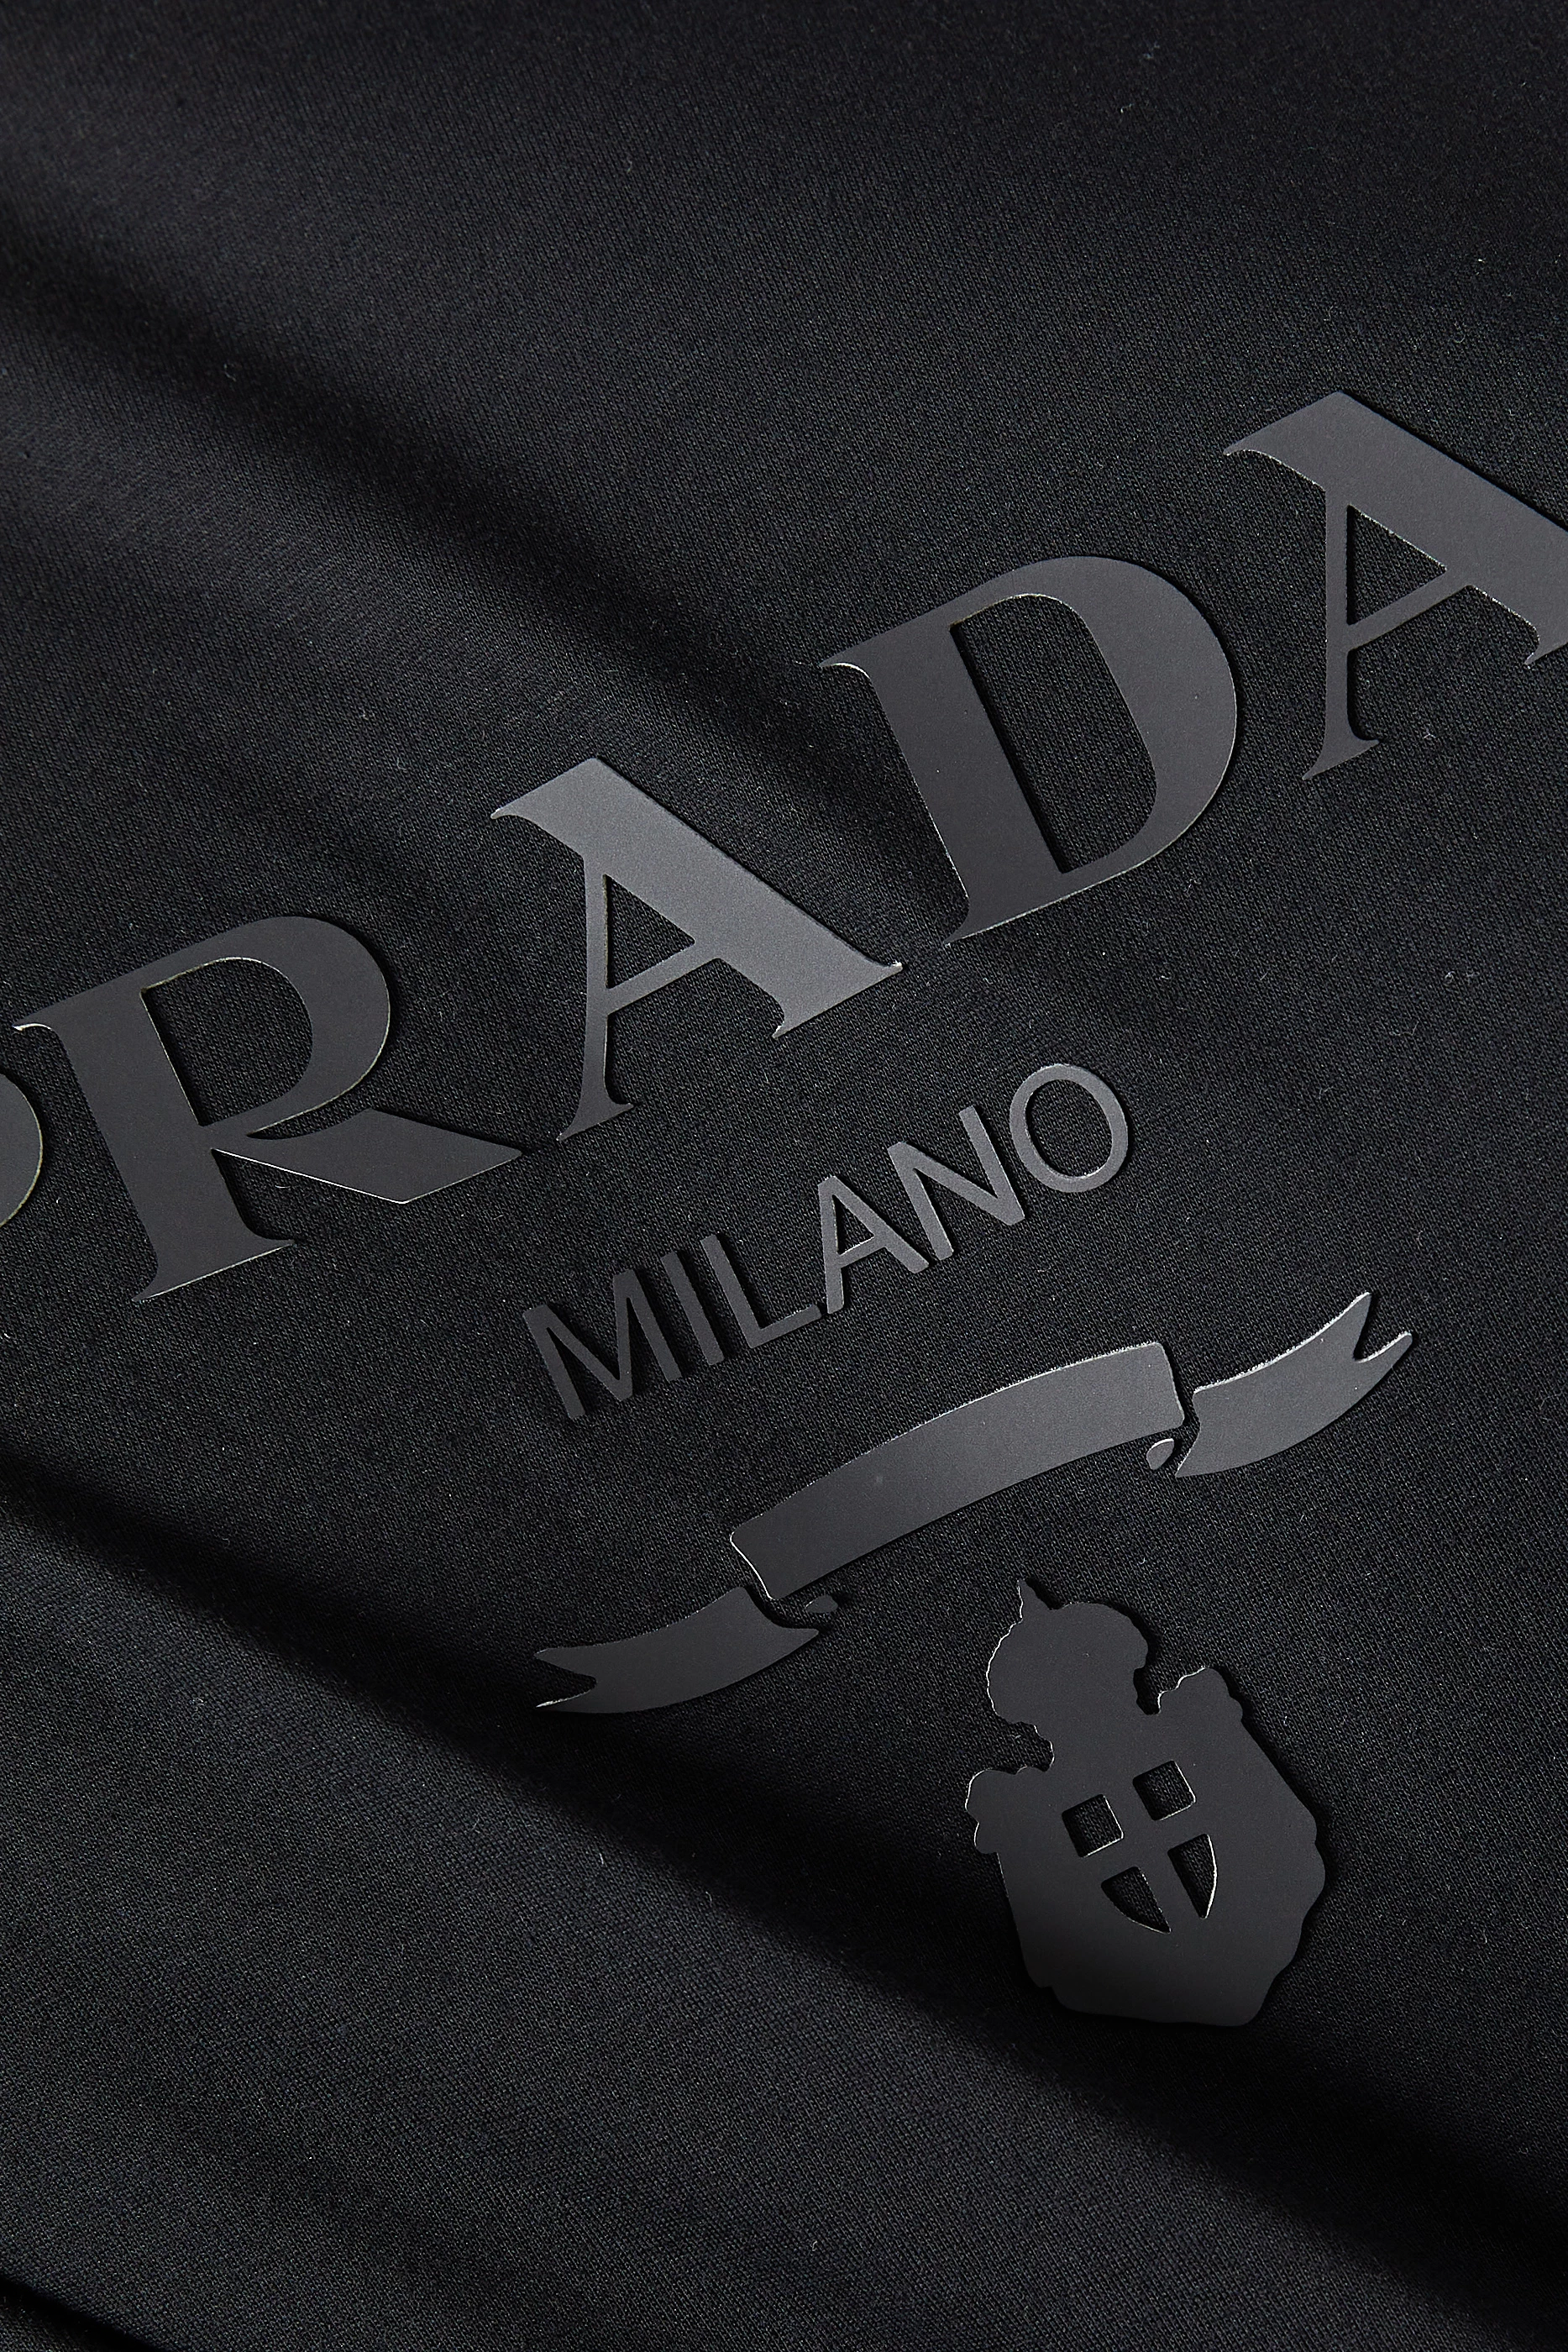 Prada Prada Milano Silicone Logo T-shirt White